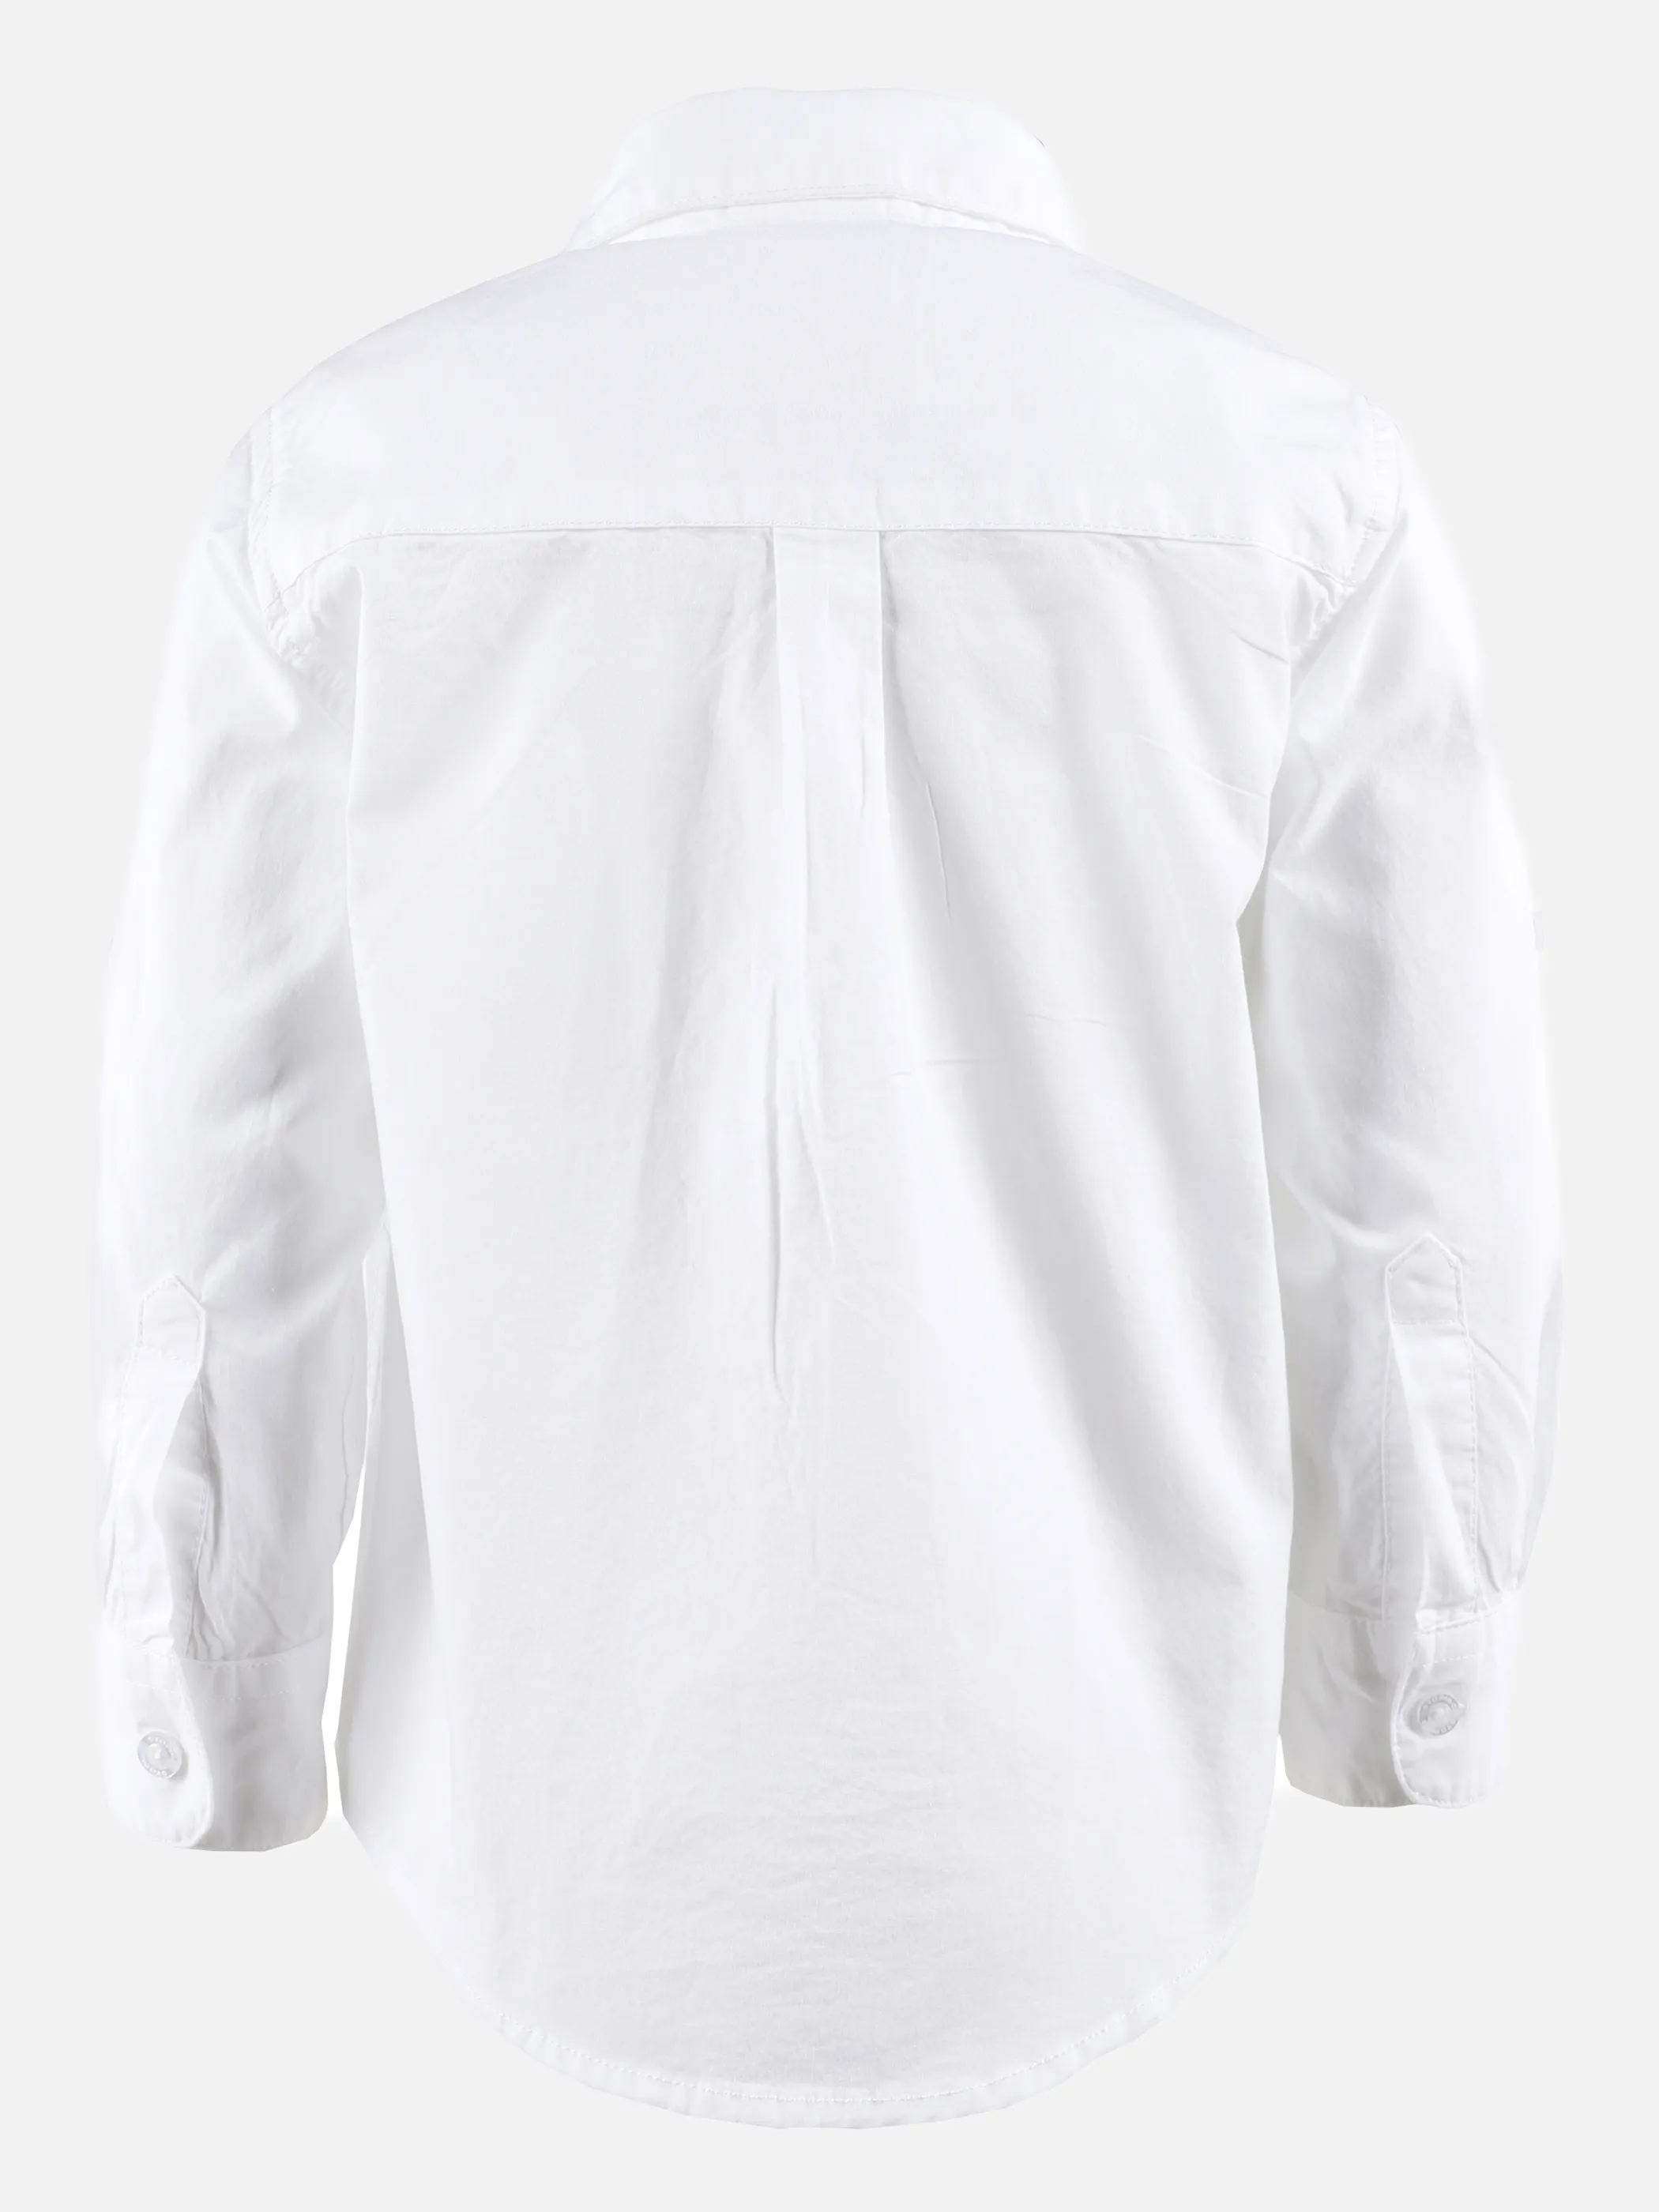 Stop + Go KJ Longsleeve Hemd mit Brusttasche in weiß Weiß 875623 WEIß 2